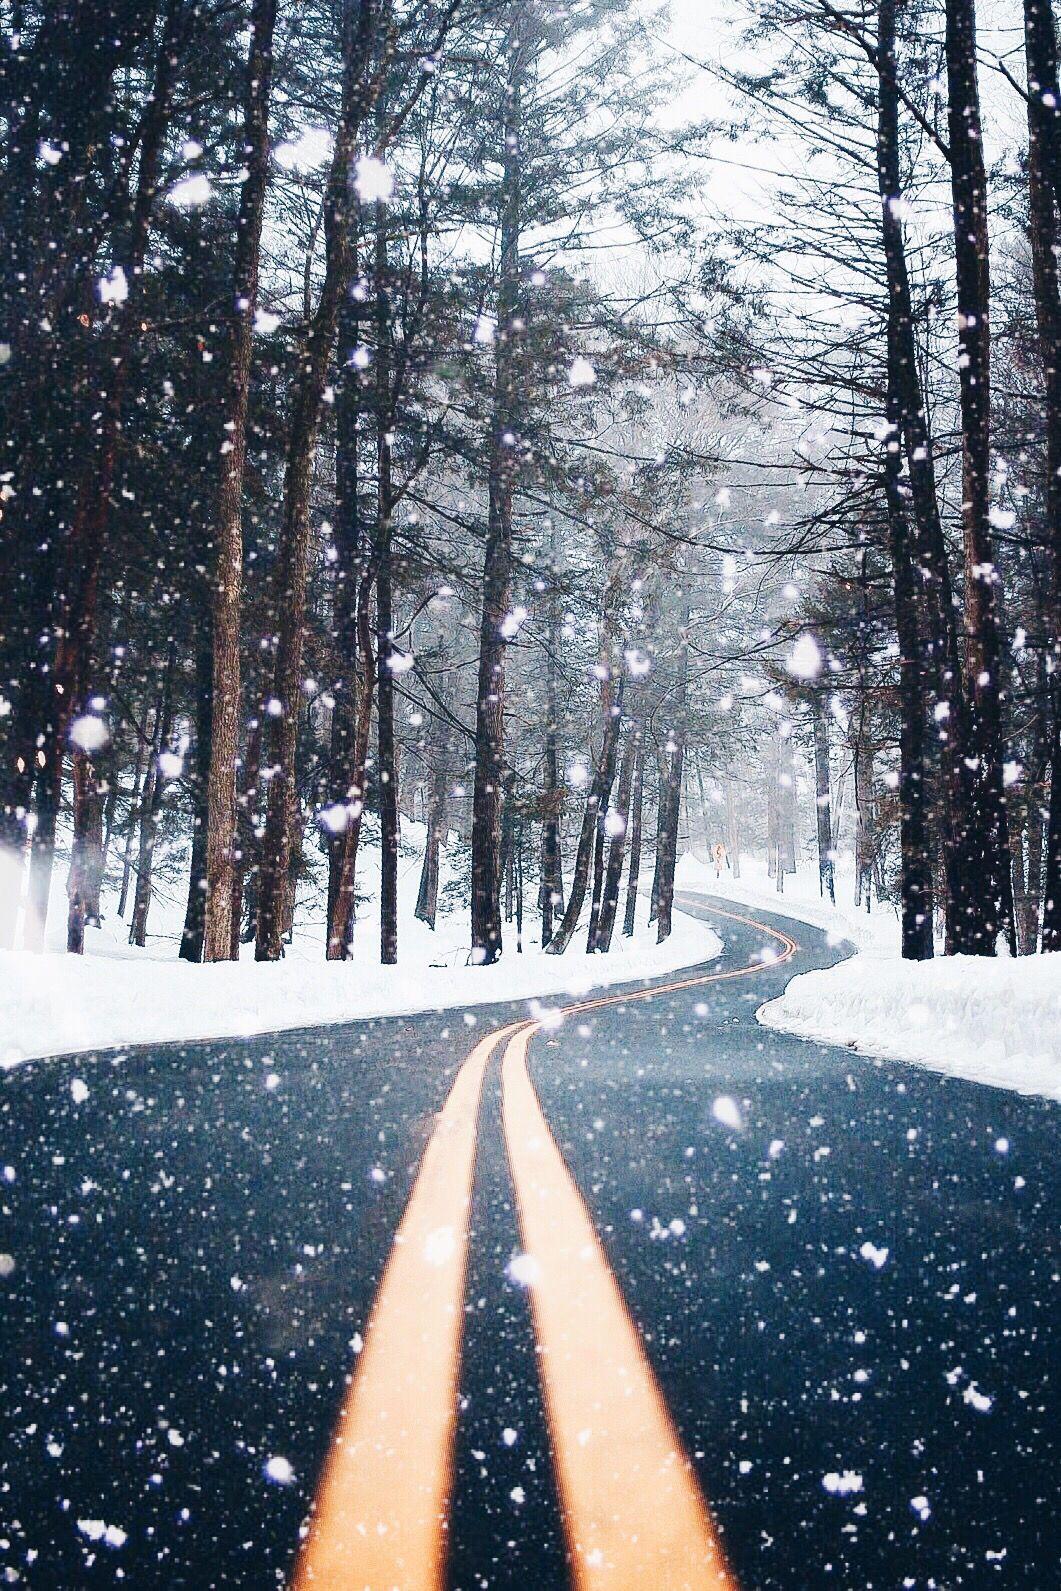 imthejam. vsco. Winter photography, Winter scenes, Snow